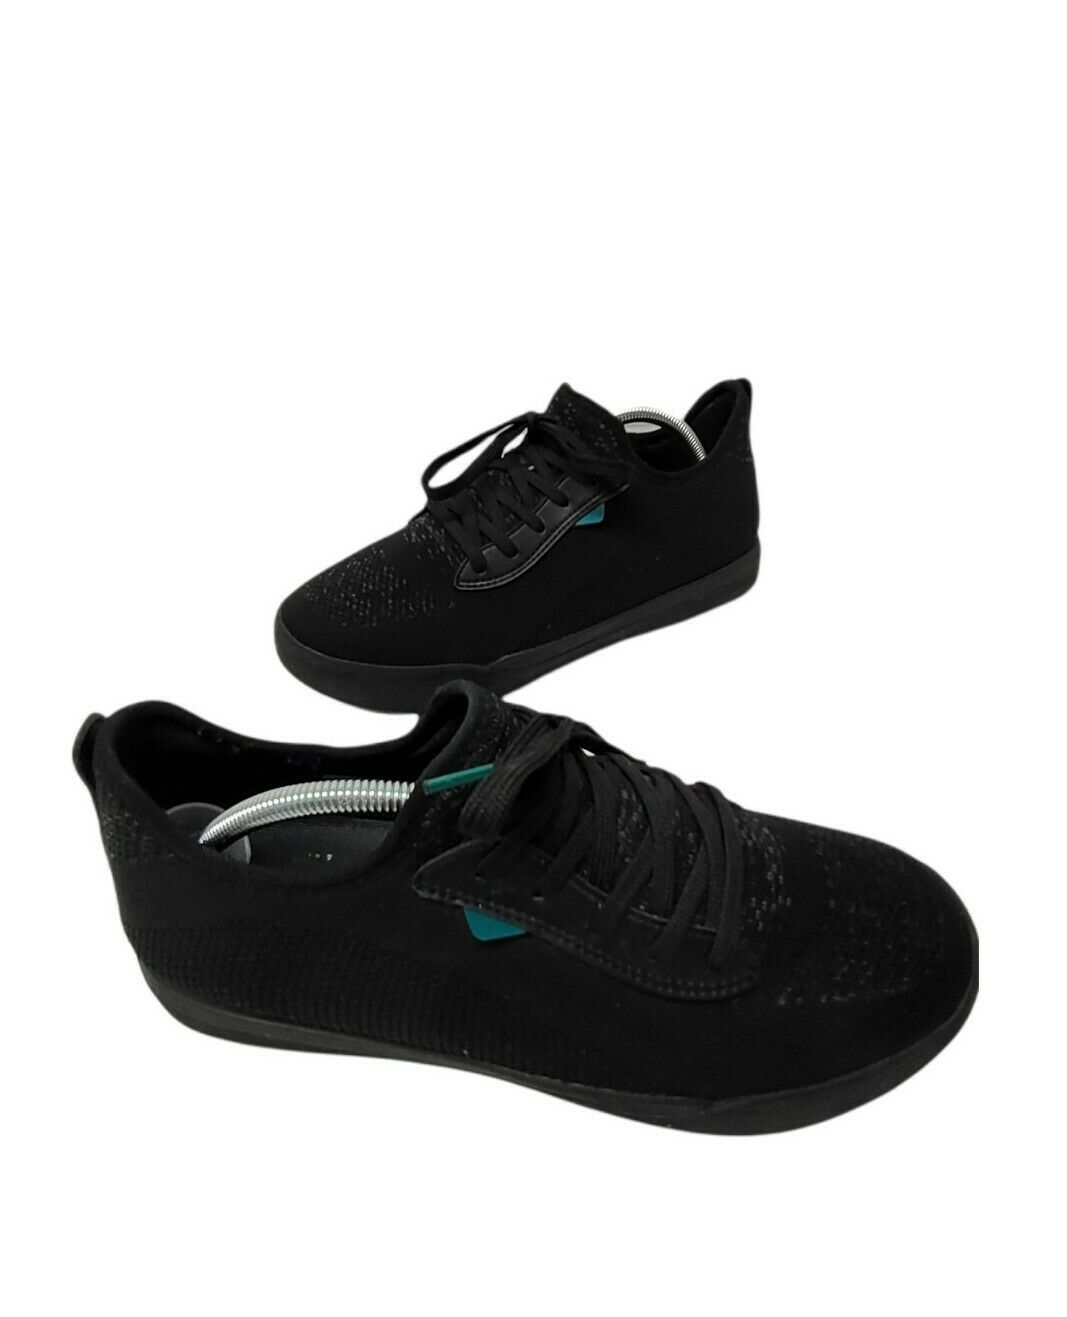 Vessi Weekend Black Walking Sneakers Casual Waterproof Shoes Men Size 10